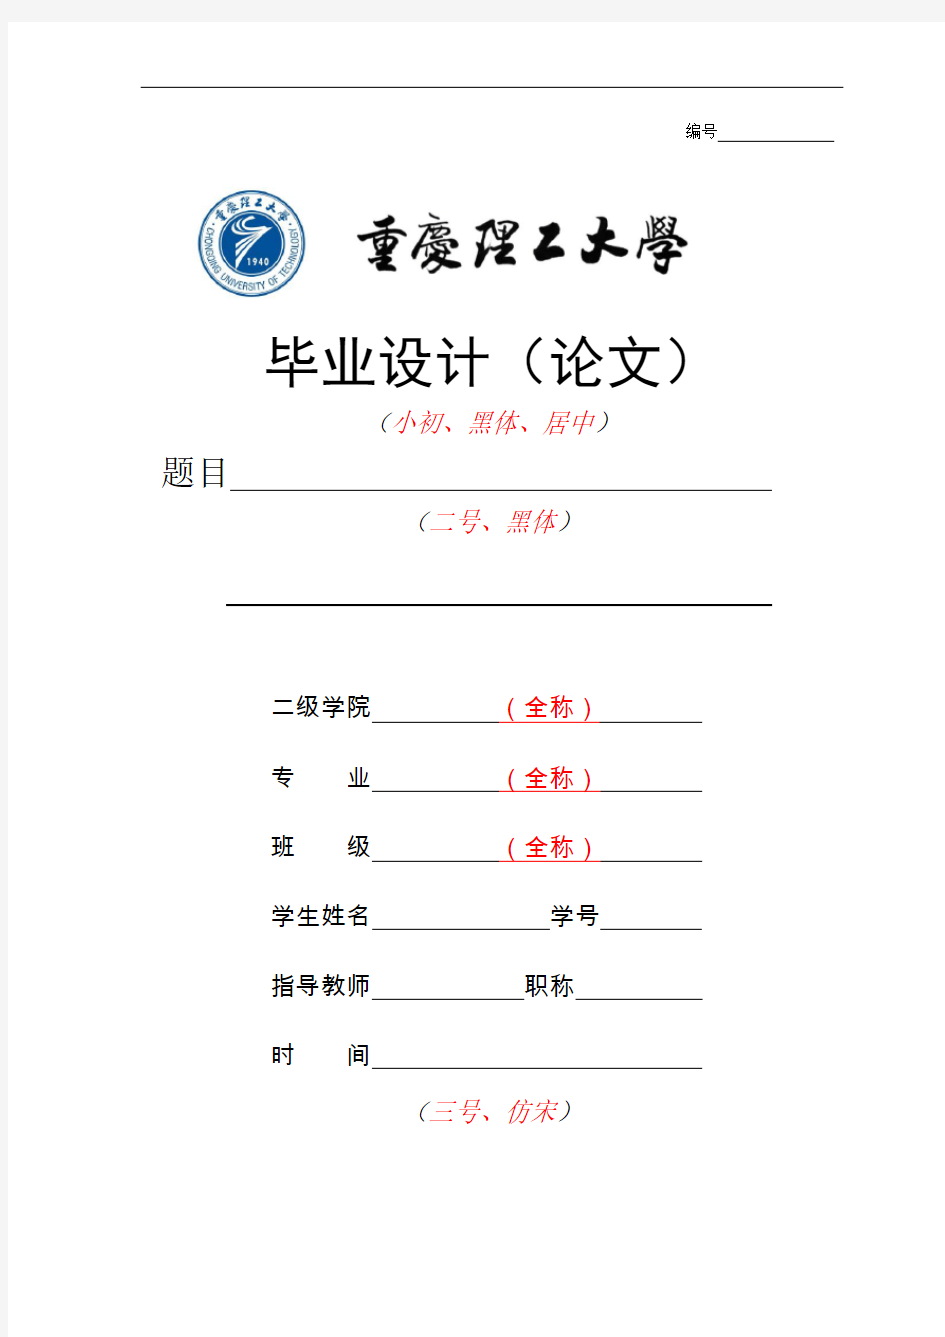 重庆理工大学毕业设计(论文)格式样本